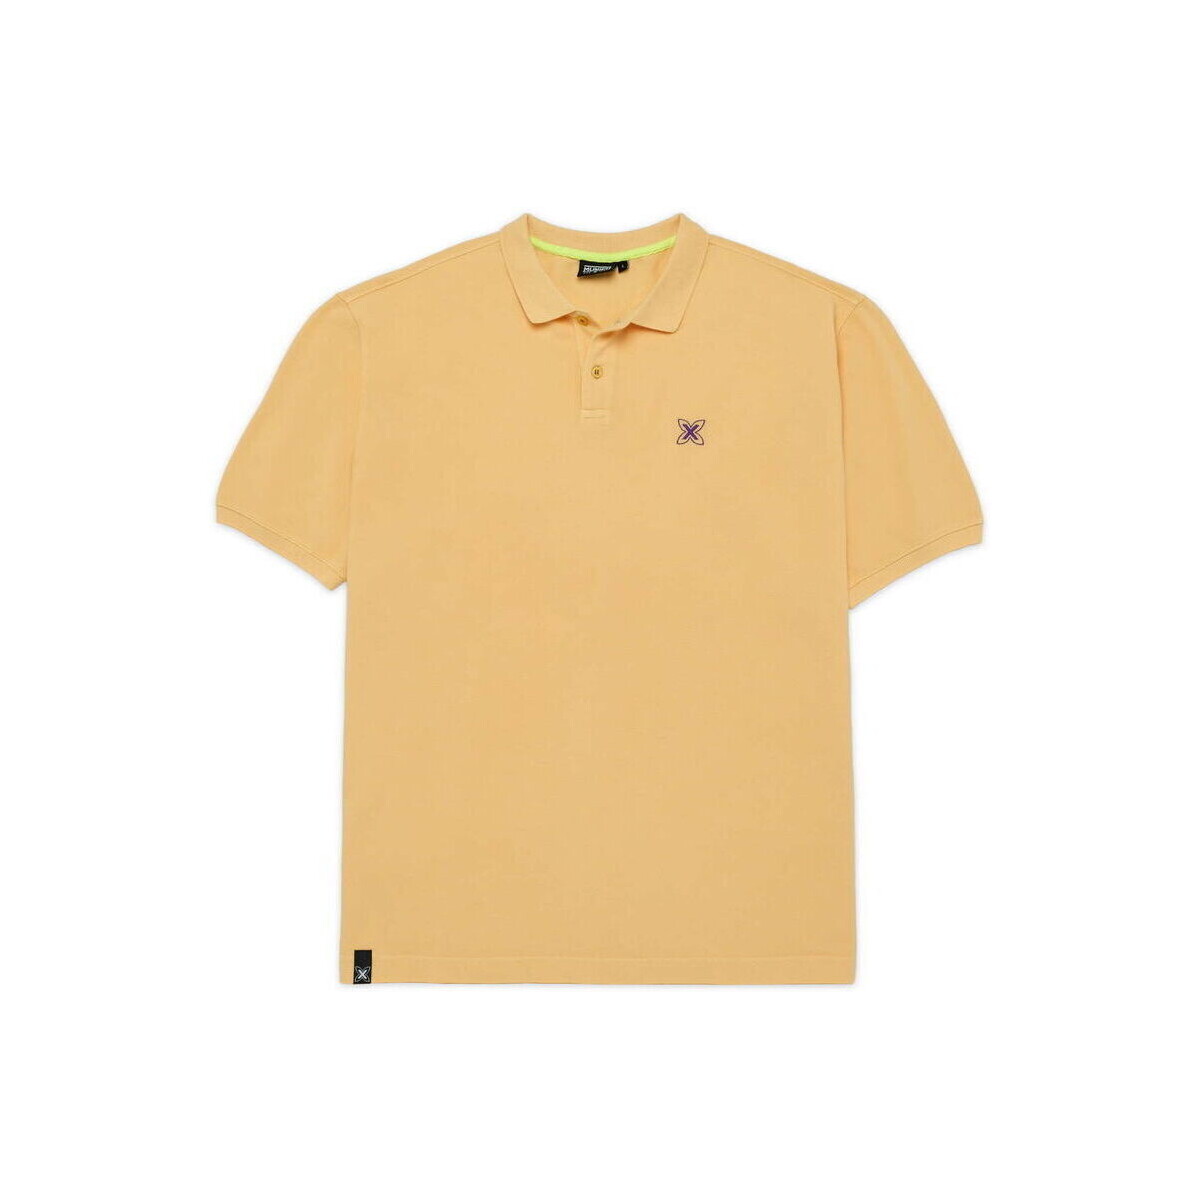 tekstylia Męskie Koszulki polo z krótkim rękawem Munich Polo club Żółty